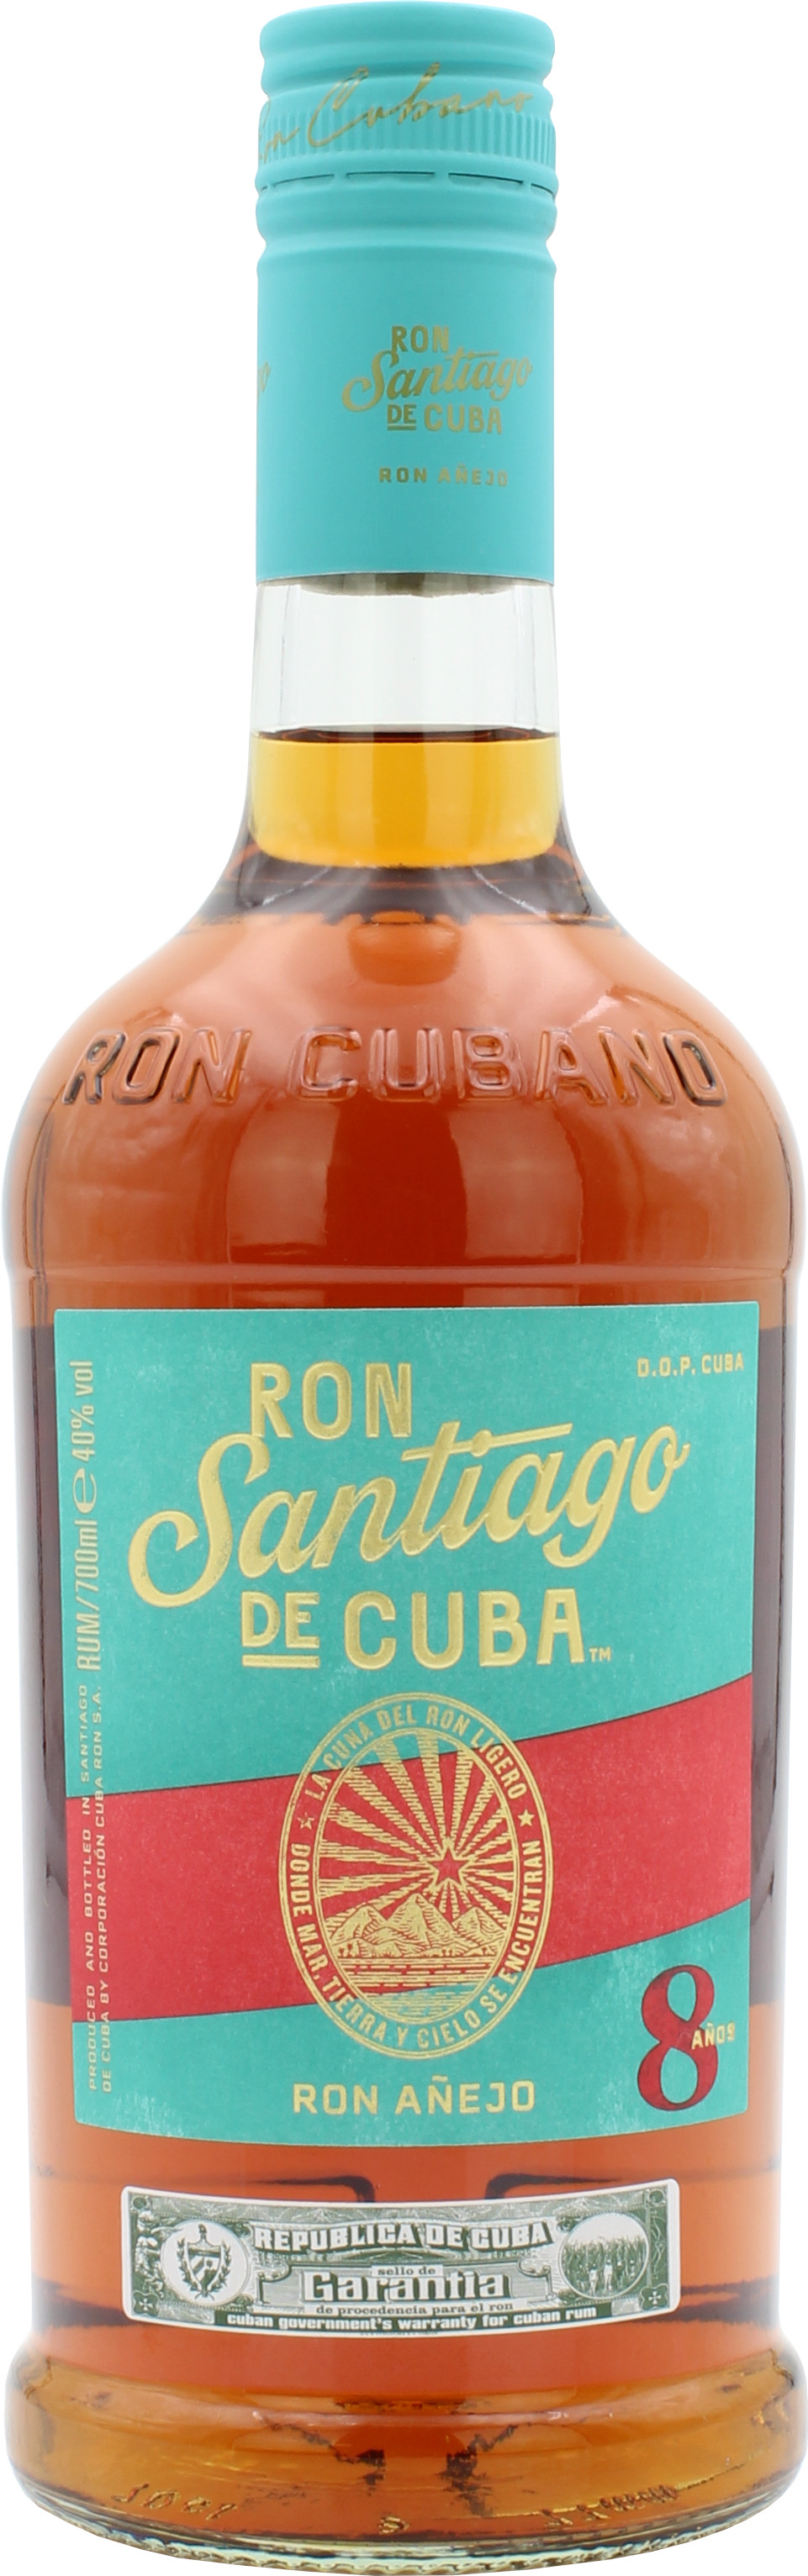 Ron Santiago de Cuba Ron Anejo Tradicion 8 Años 40.0% 0,7l